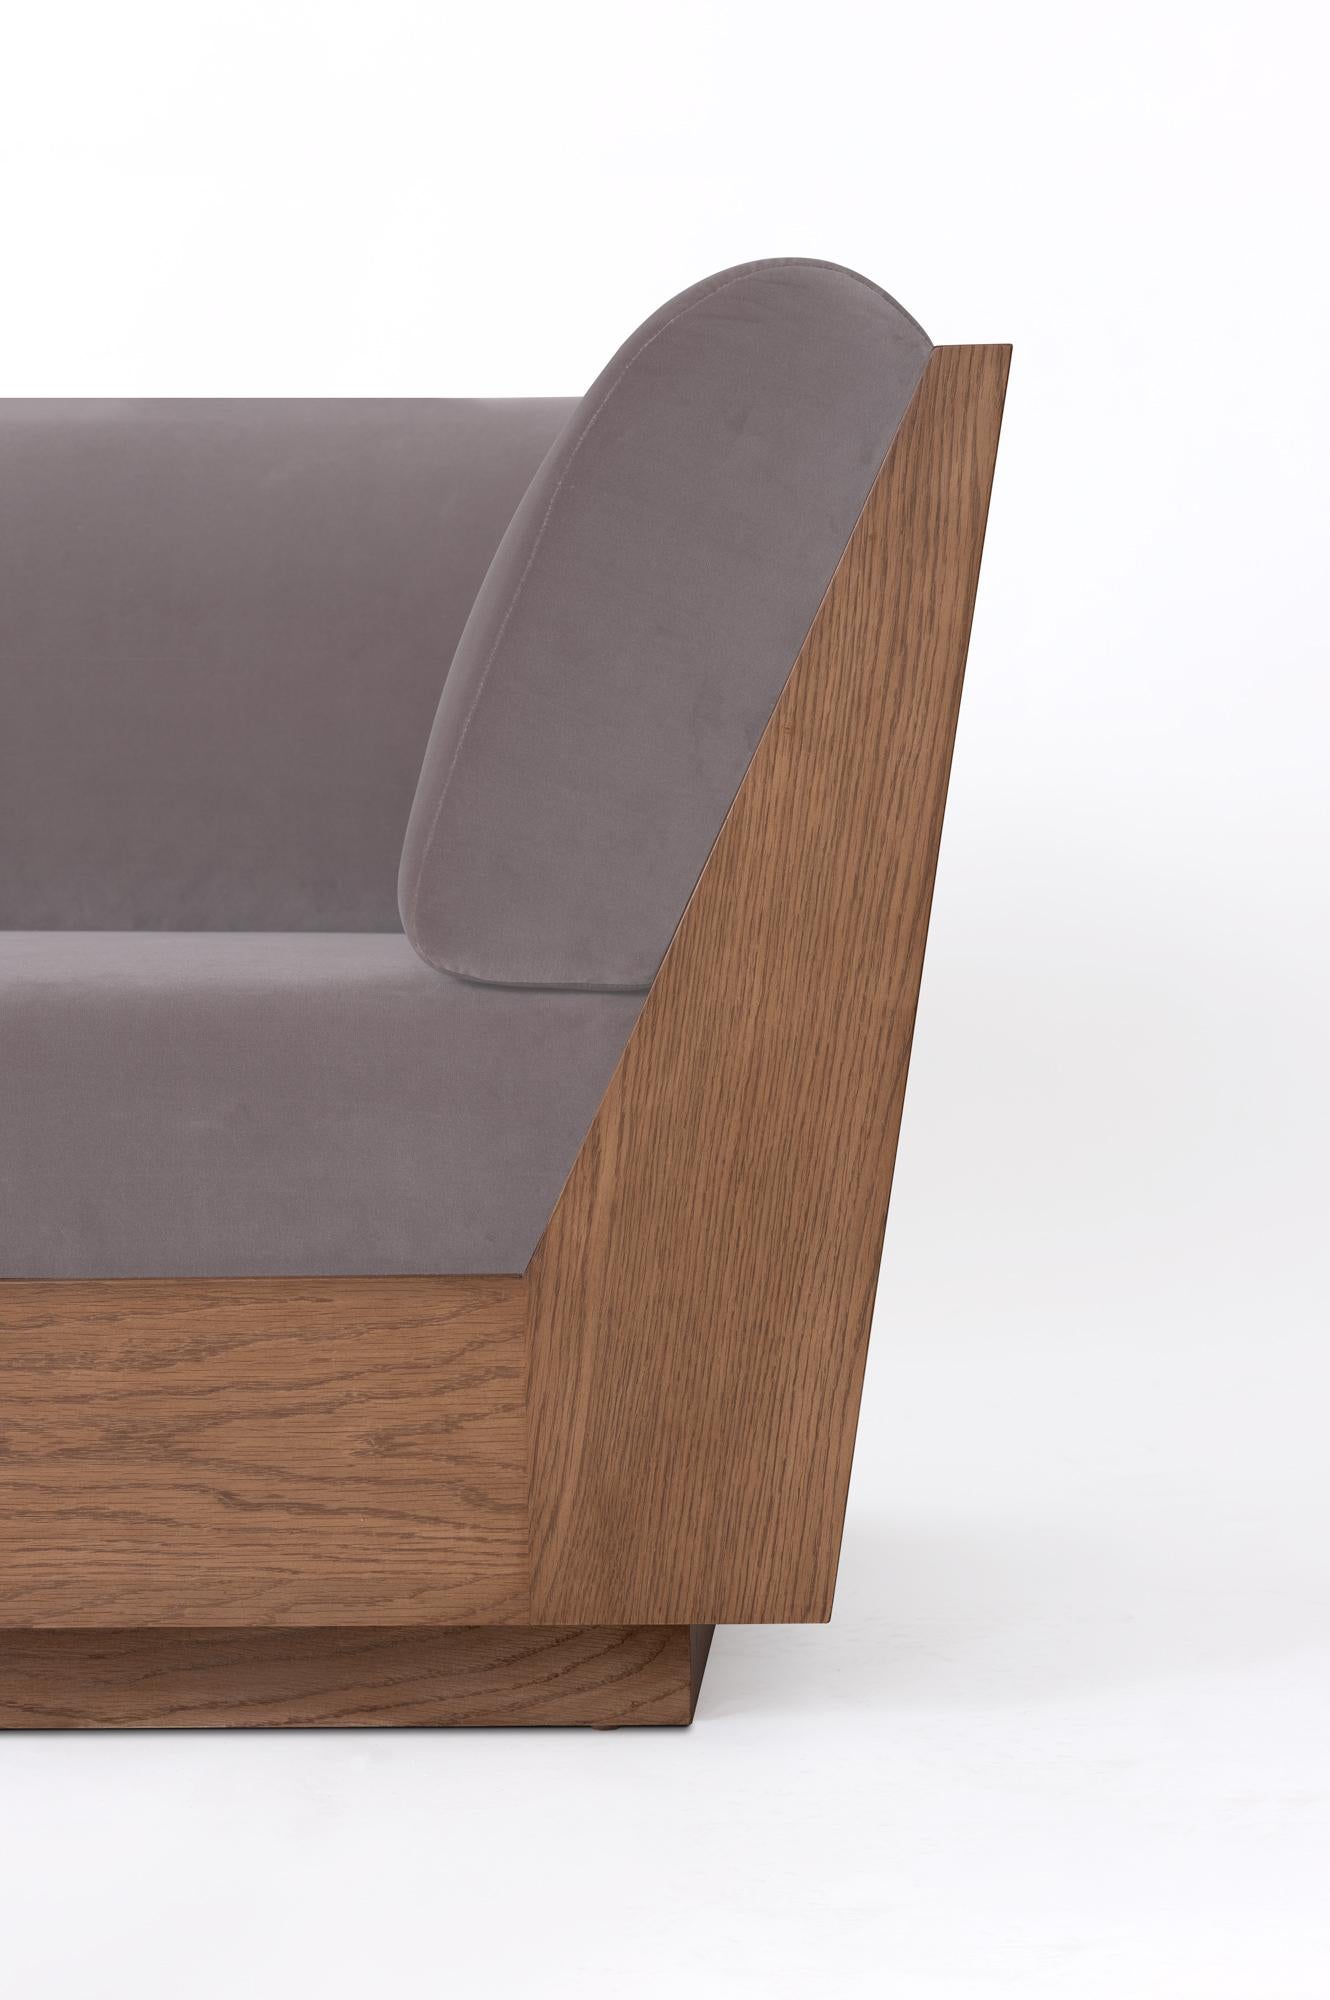 Das Sofa PEDREGAL zeichnet sich durch klare, minimalistische Linien und einen klaren Schnitt aus. Der Sockel und der Rahmen aus abgestuftem Eichenholz bilden ein markantes Profil, das die Strenge der Silhouette mit Wärme